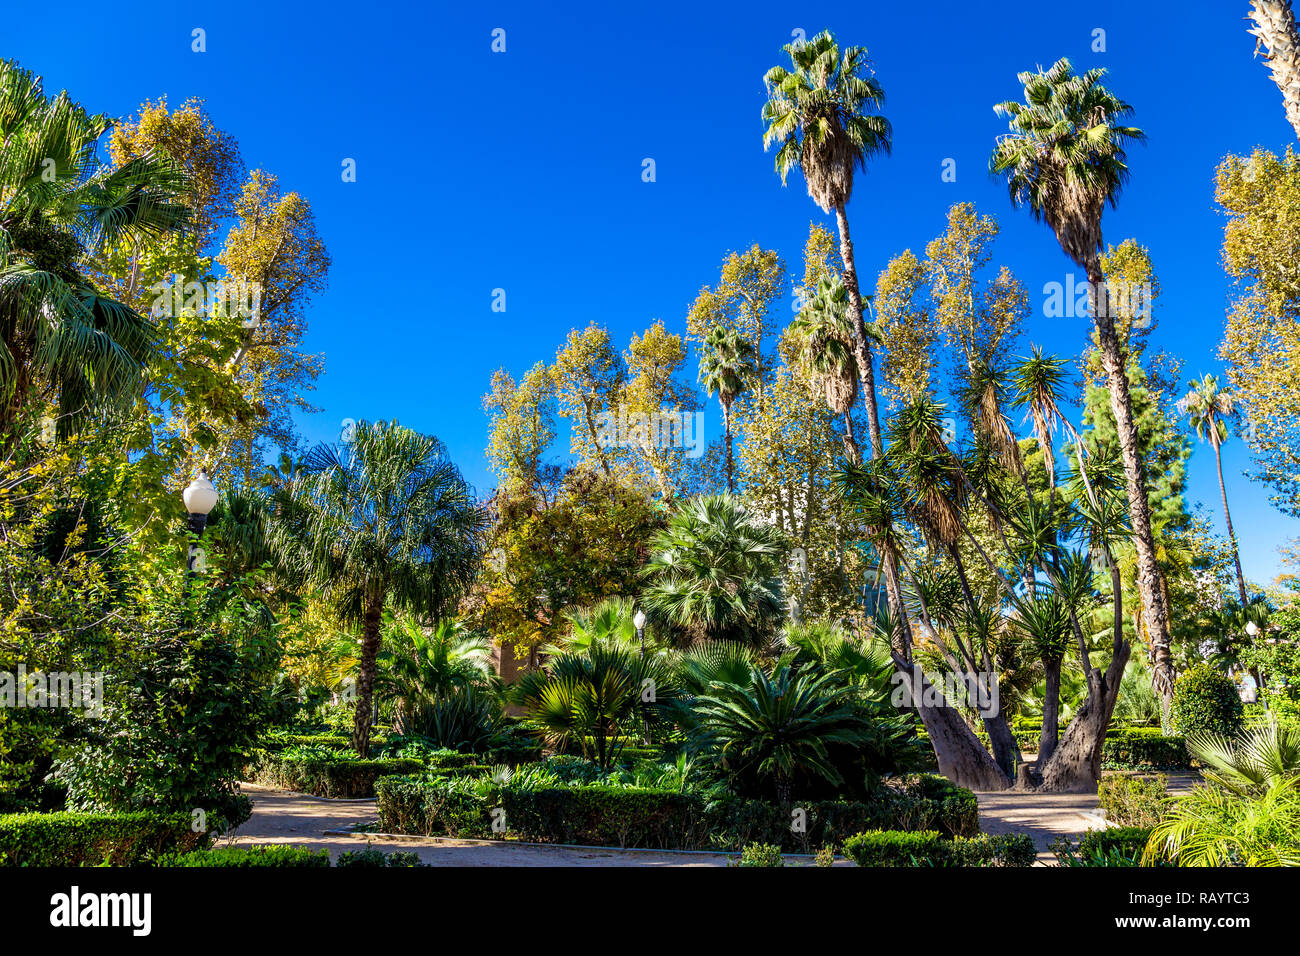 Ribalta Park in Castellon de la Plana, Spain Stock Photo